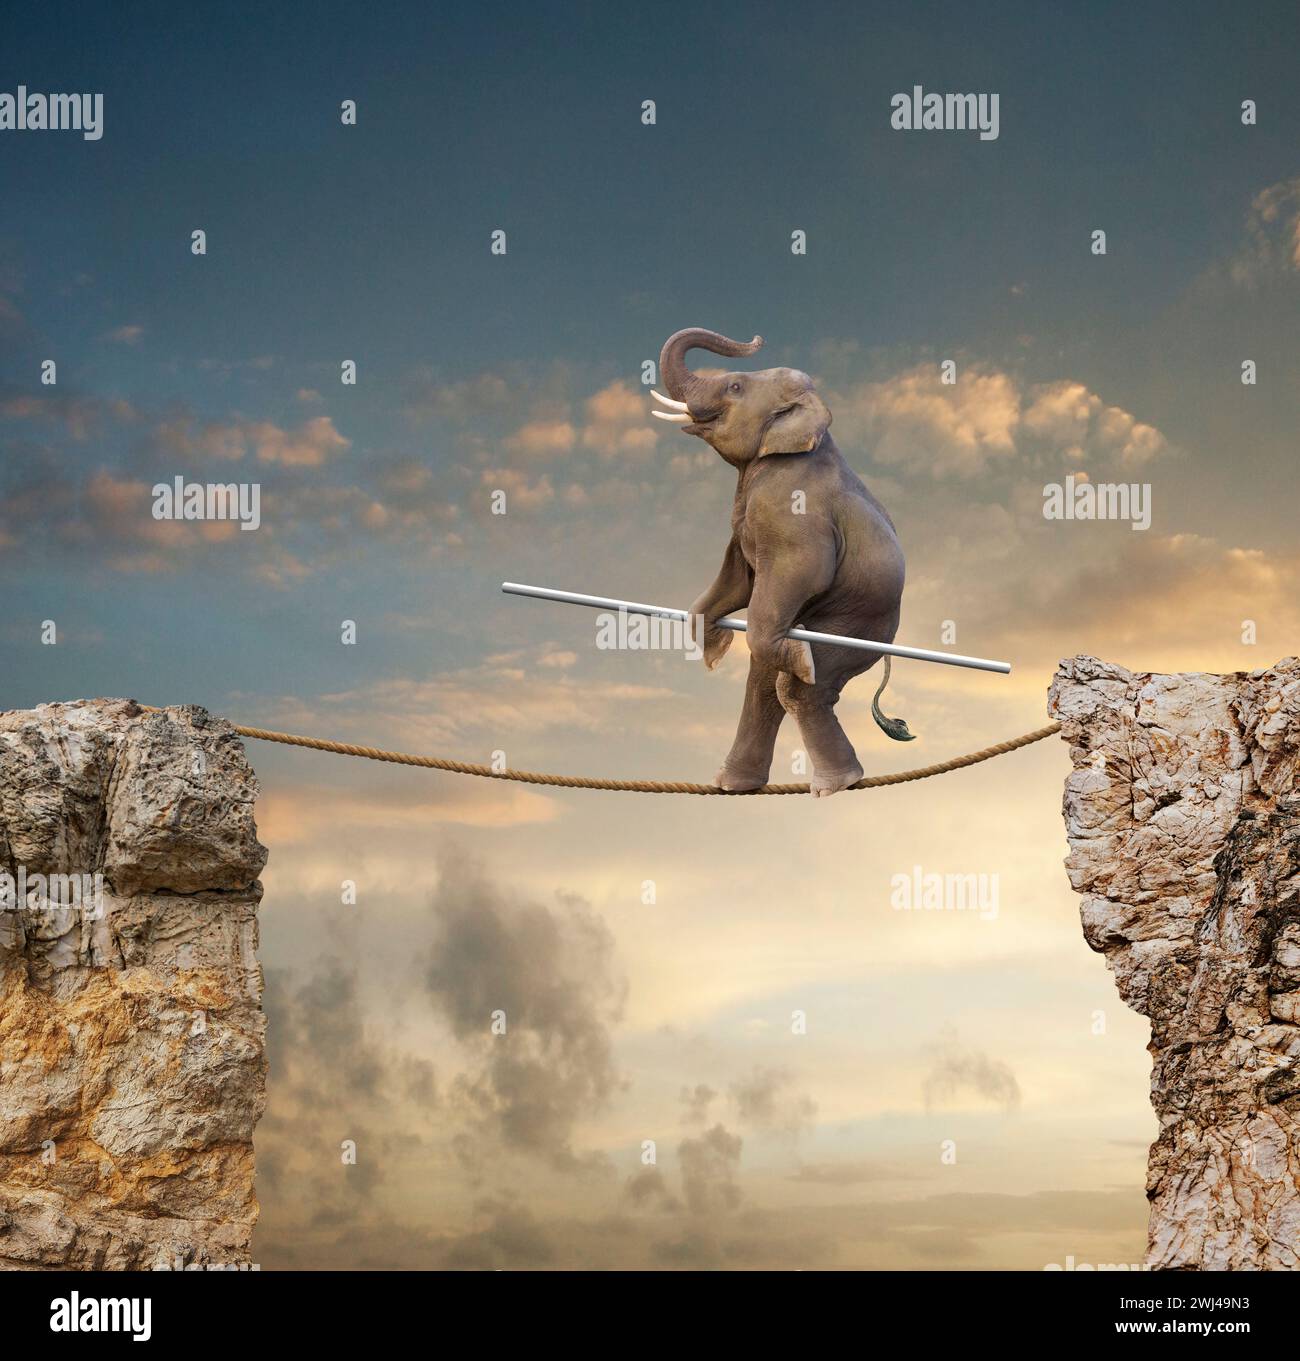 Un éléphant drôle se produit sur une corde raide dans une image sur la taille, l'agilité, la compétence et l'équilibre. Banque D'Images